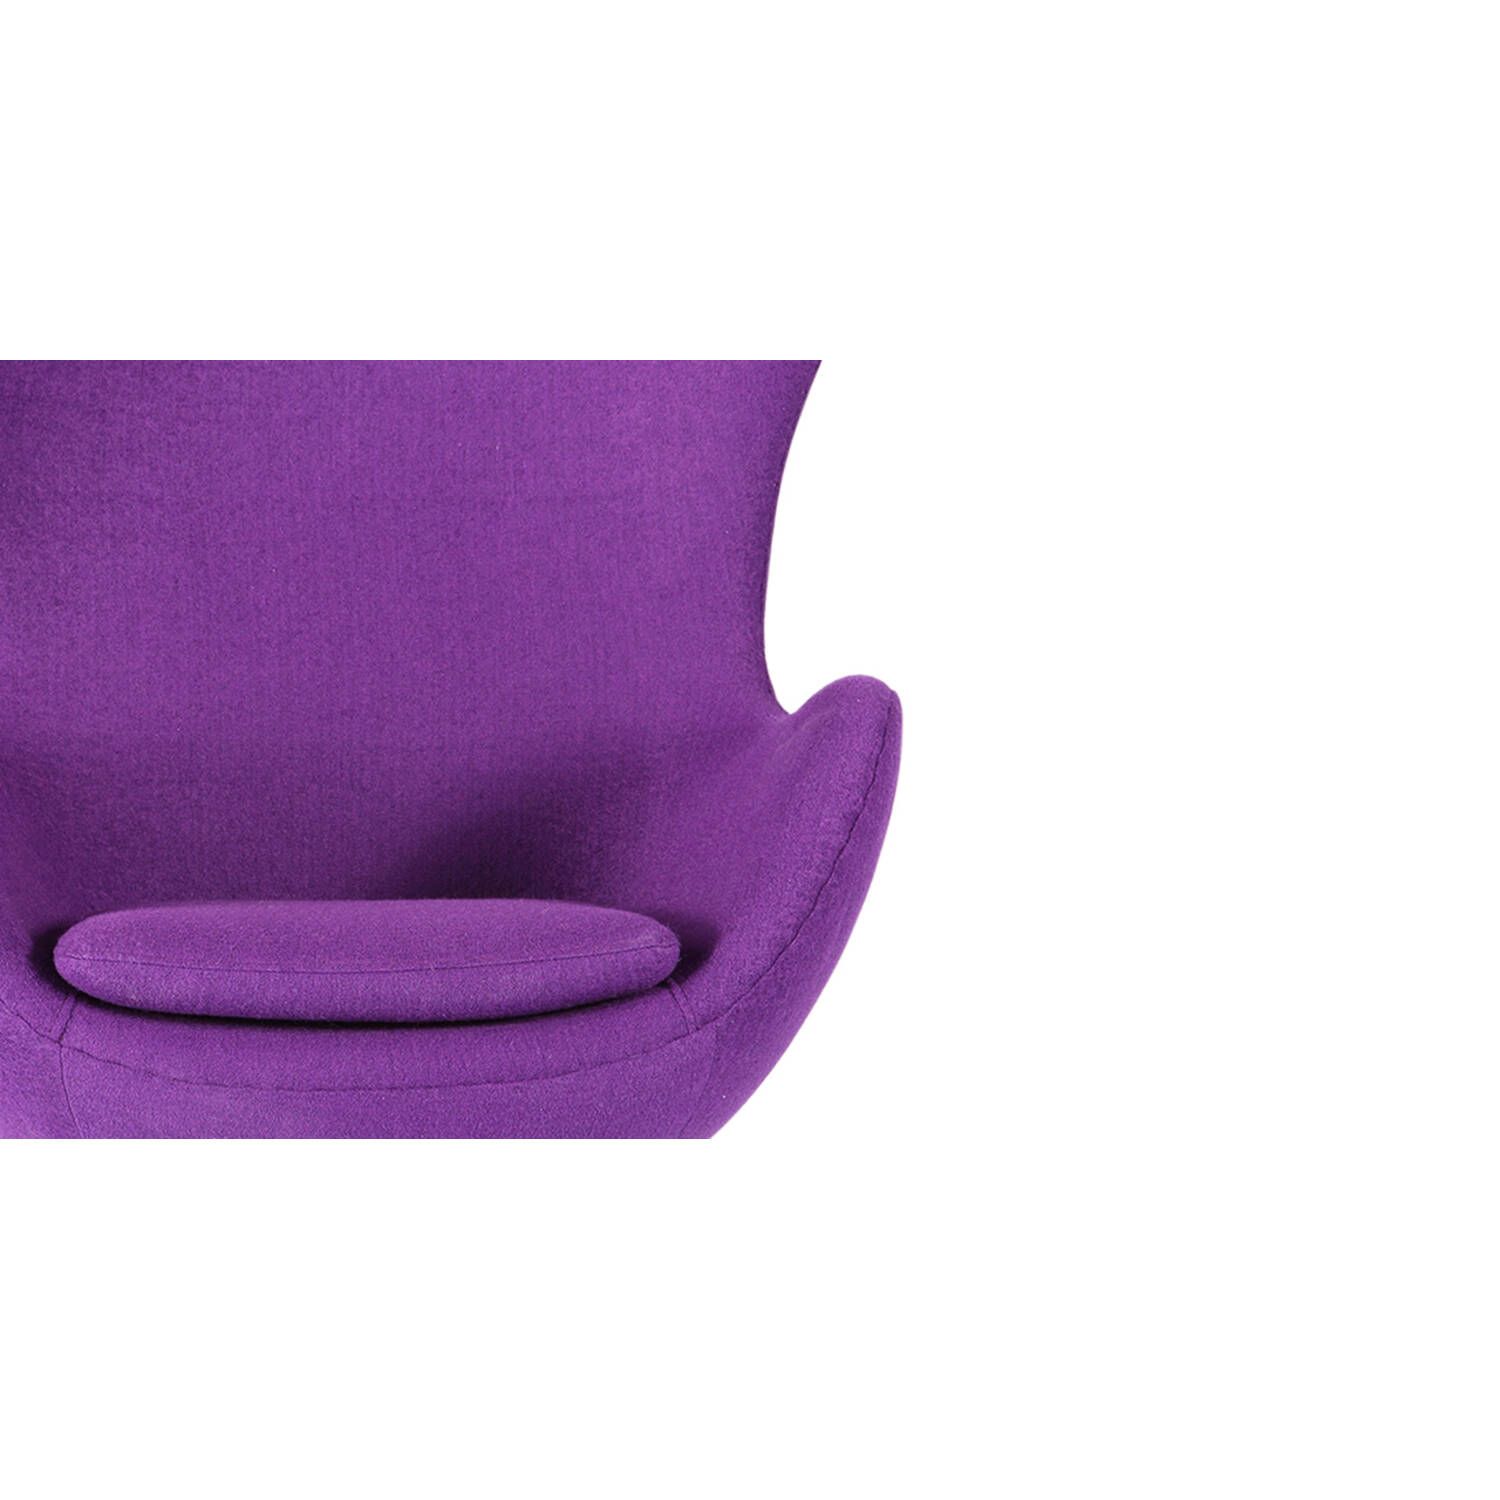 Фиолетовое кресло Egg